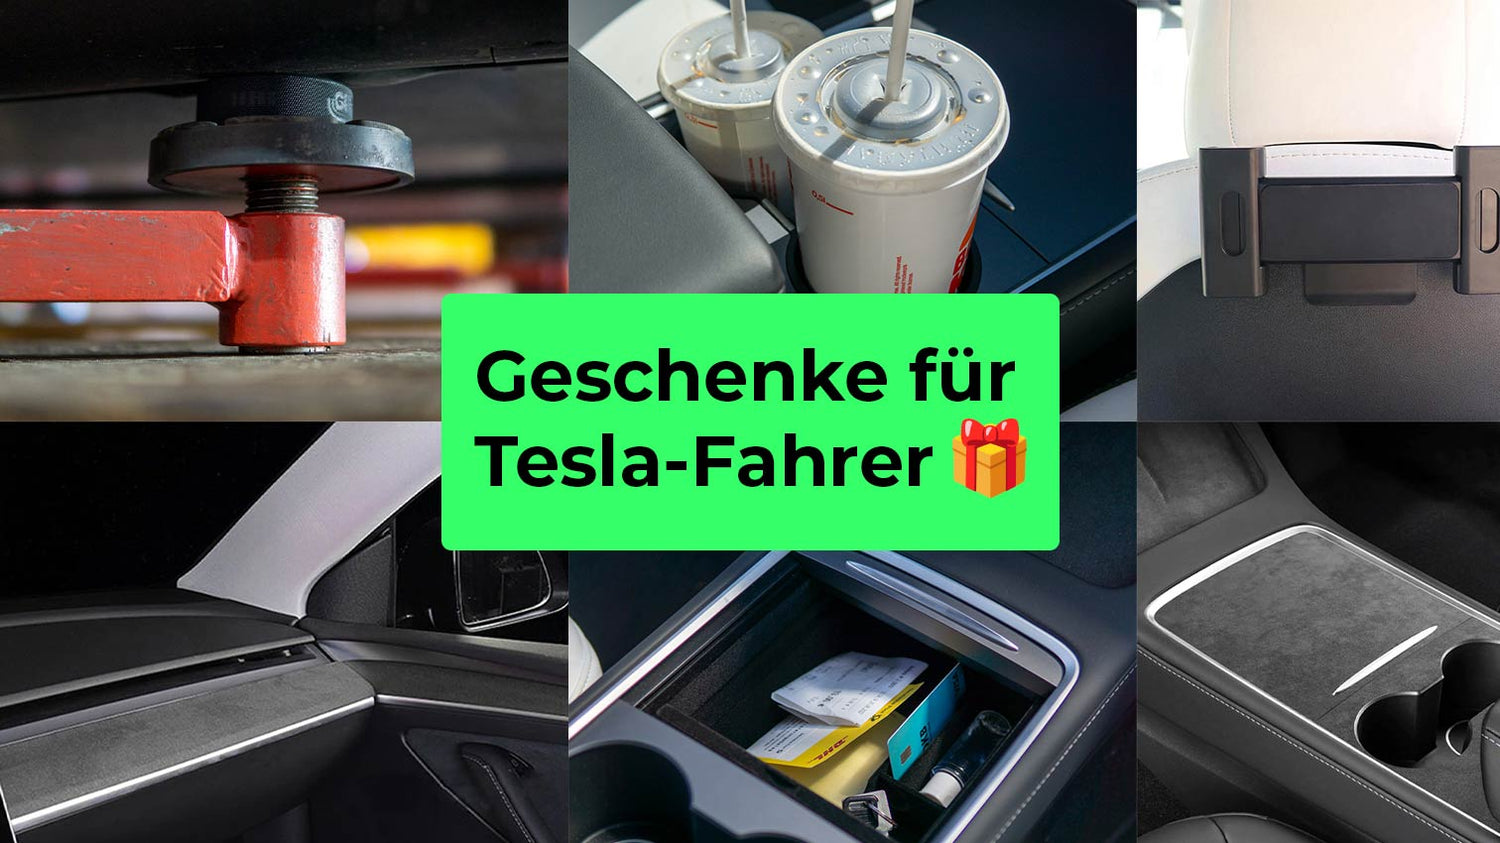 Geschenke für Tesla-Fahrer: 10 tolle Ideen für Weihnachten und Geburtstag